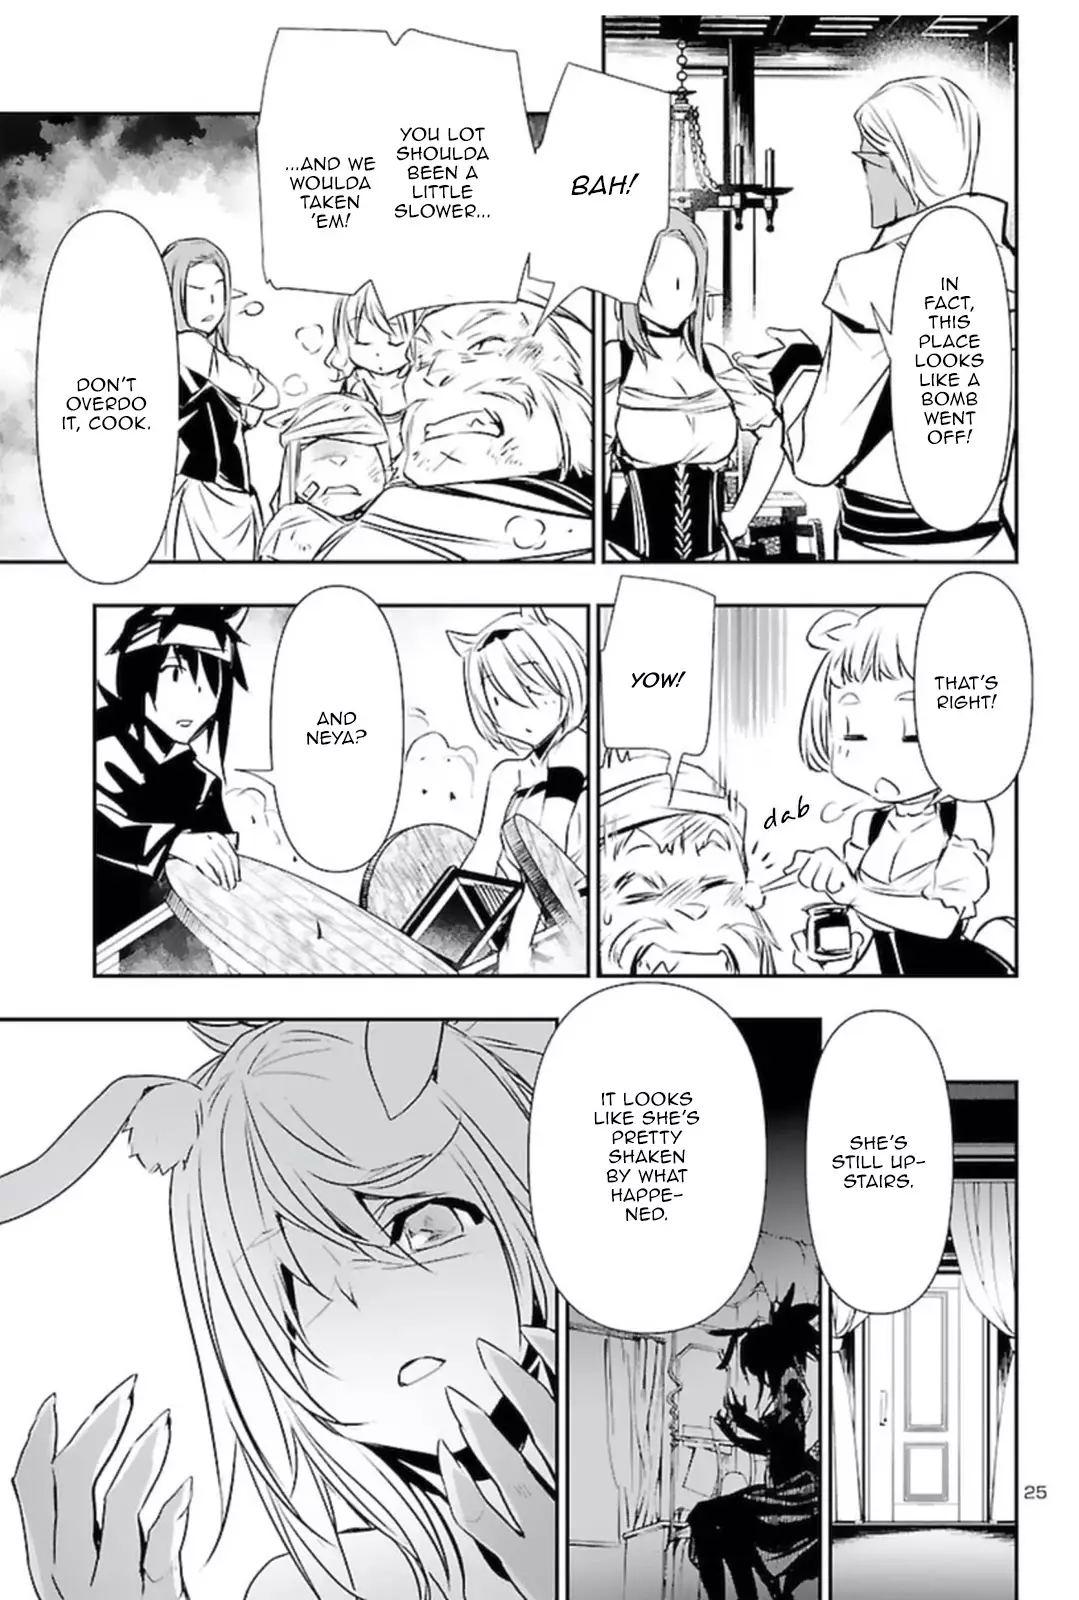 Shinju no Nectar - 56 page 24